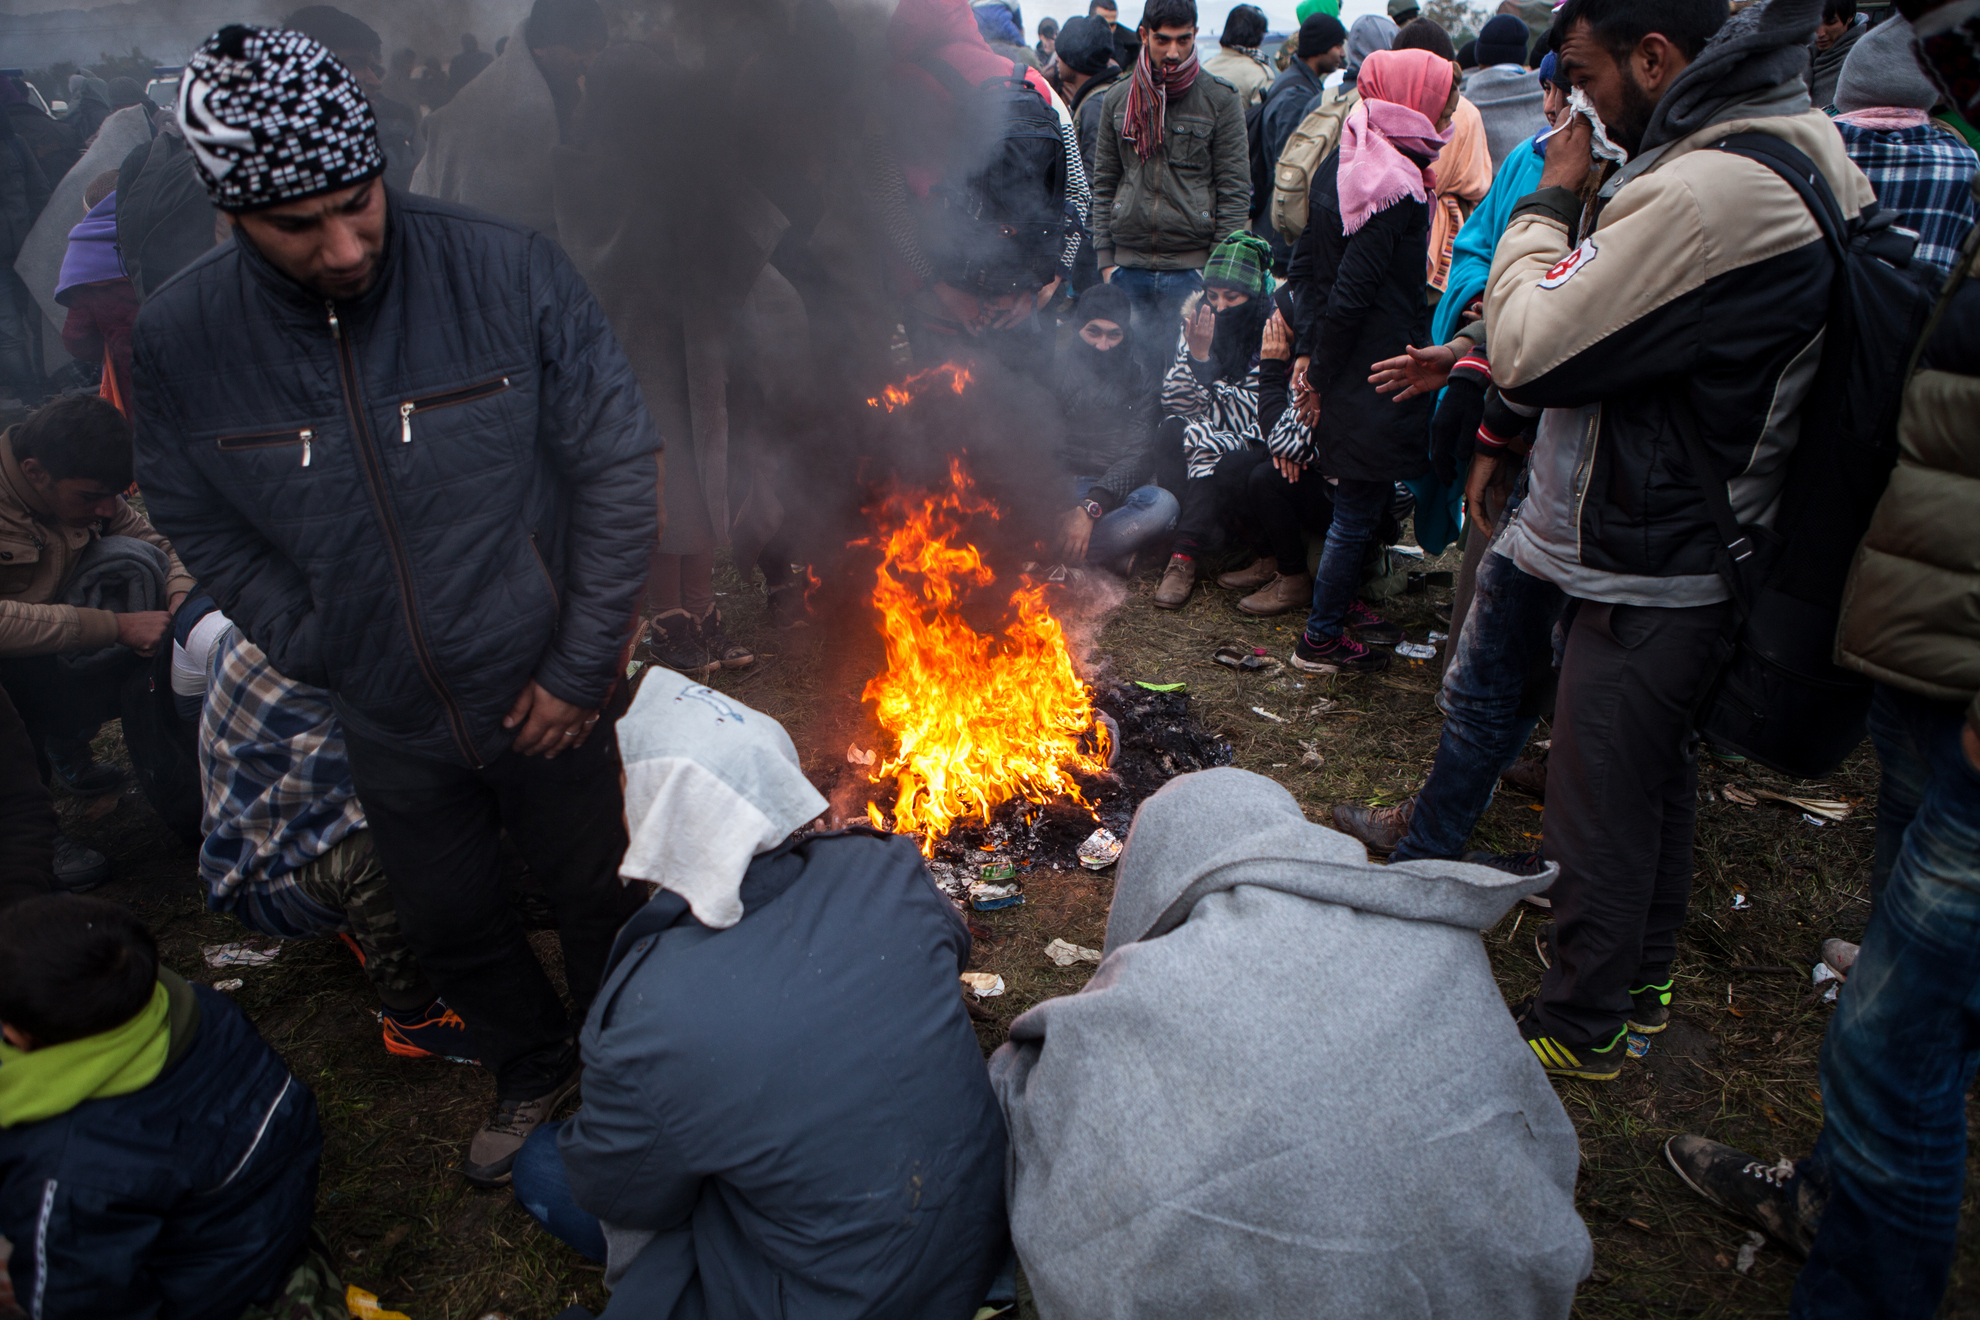 Begunci v Rigoncah čakajo na 12km dolgo pot do zbirnega centra v Brežicah. Med čakanjem se begunci grejejo ob ognju.